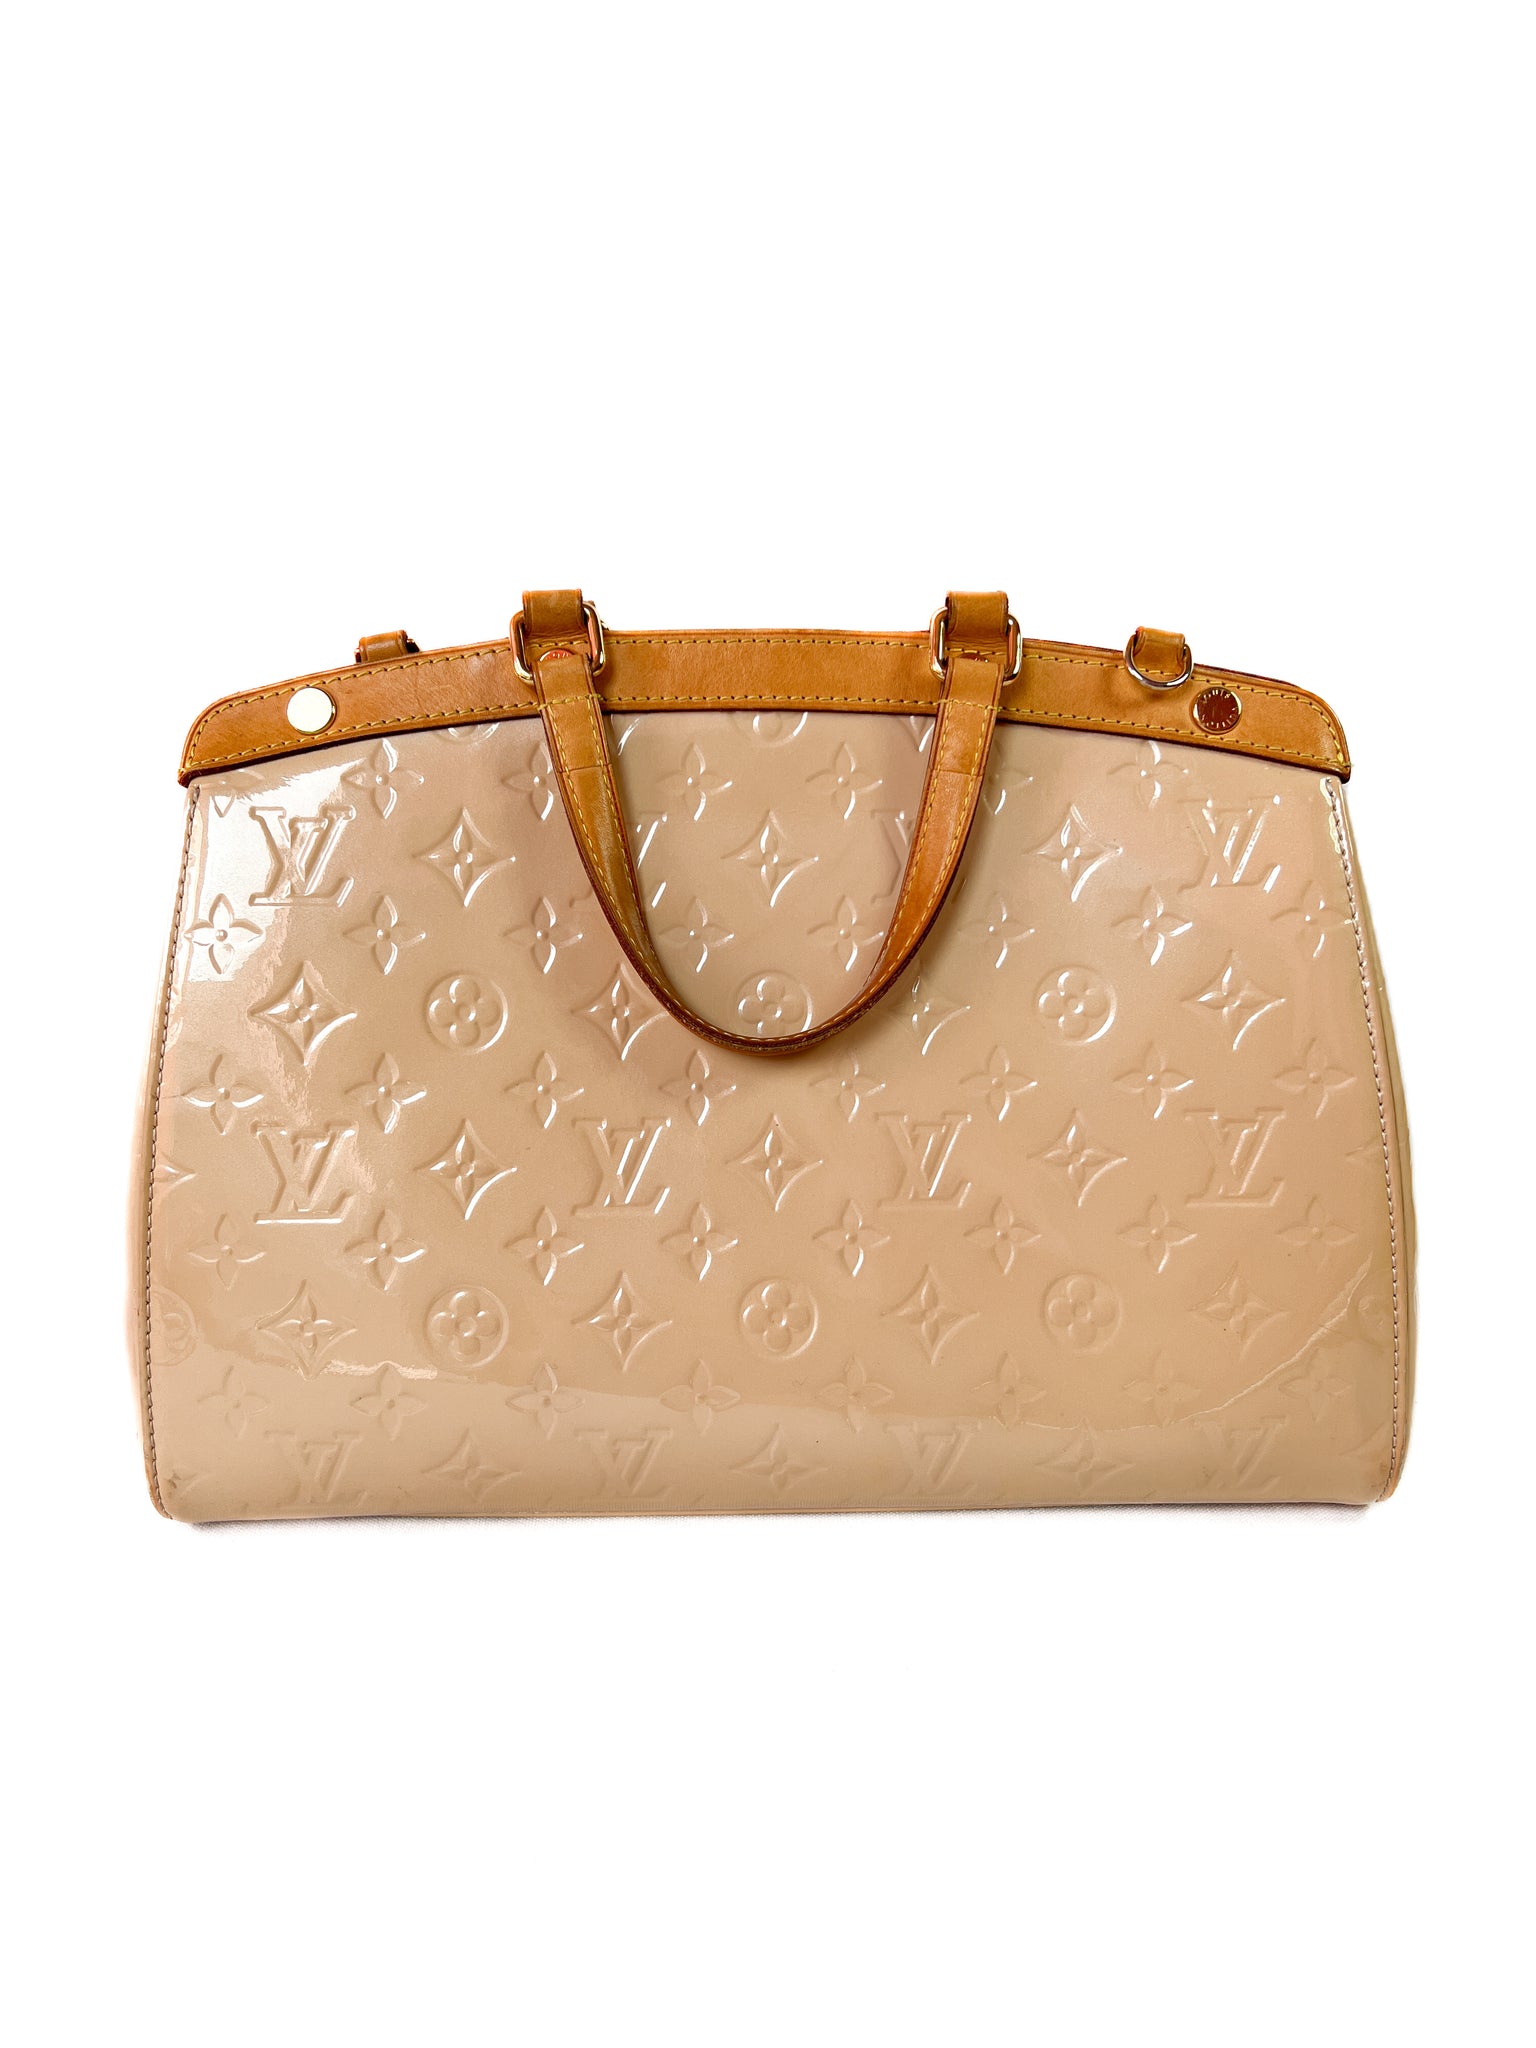 Louis Vuitton, Bags, Louis Vuitton Brea Mm